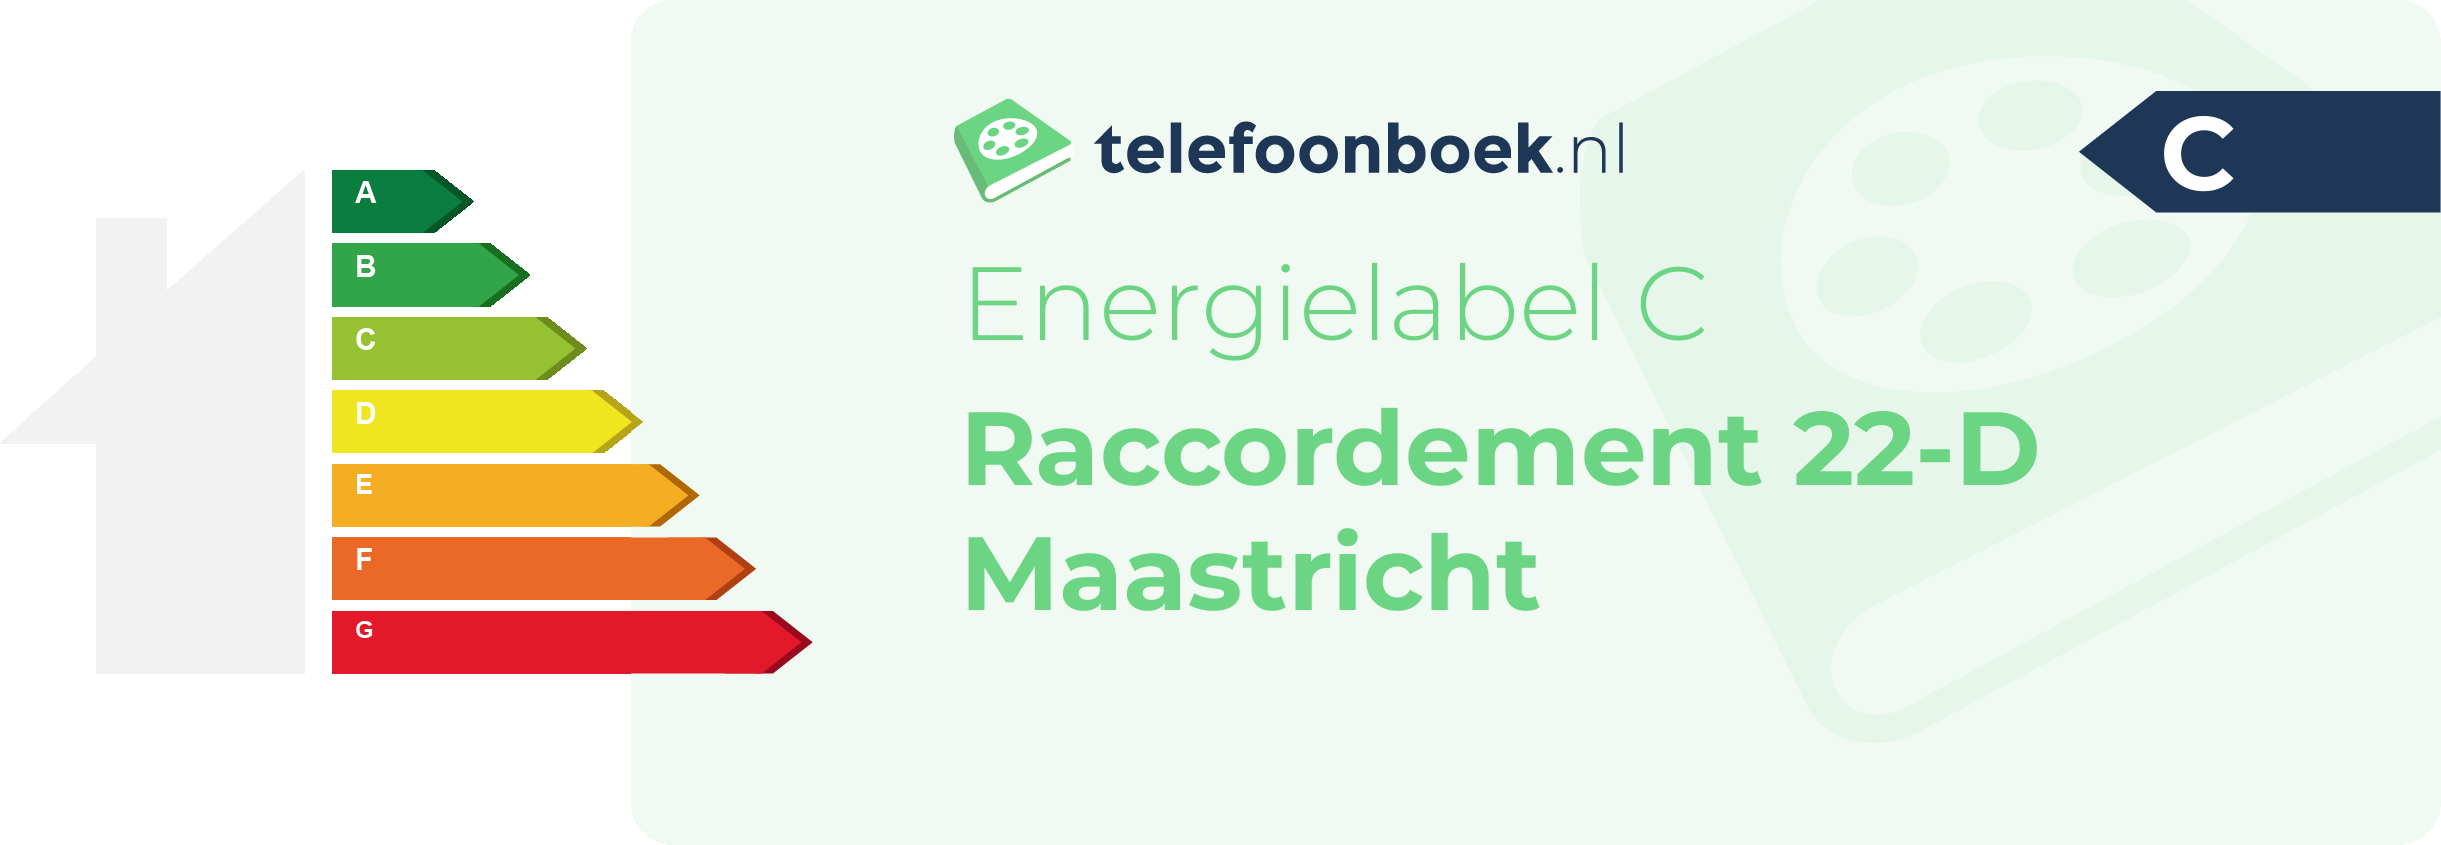 Energielabel Raccordement 22-D Maastricht